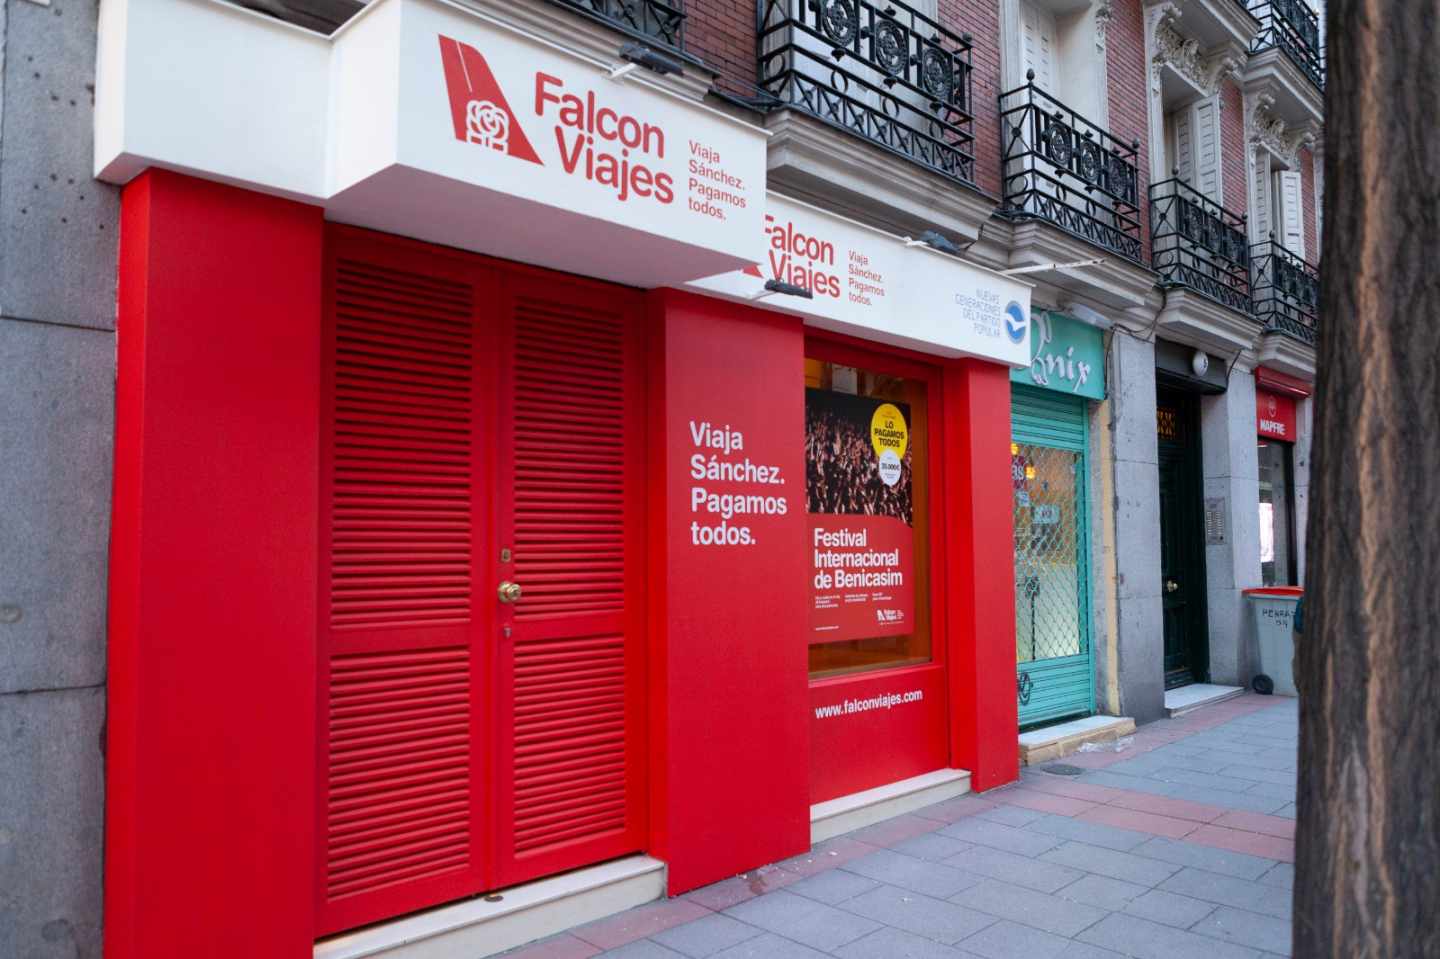 La agencia 'Falcon Viajes' instalada por el Partido Popular en plena Calle Ferraz.